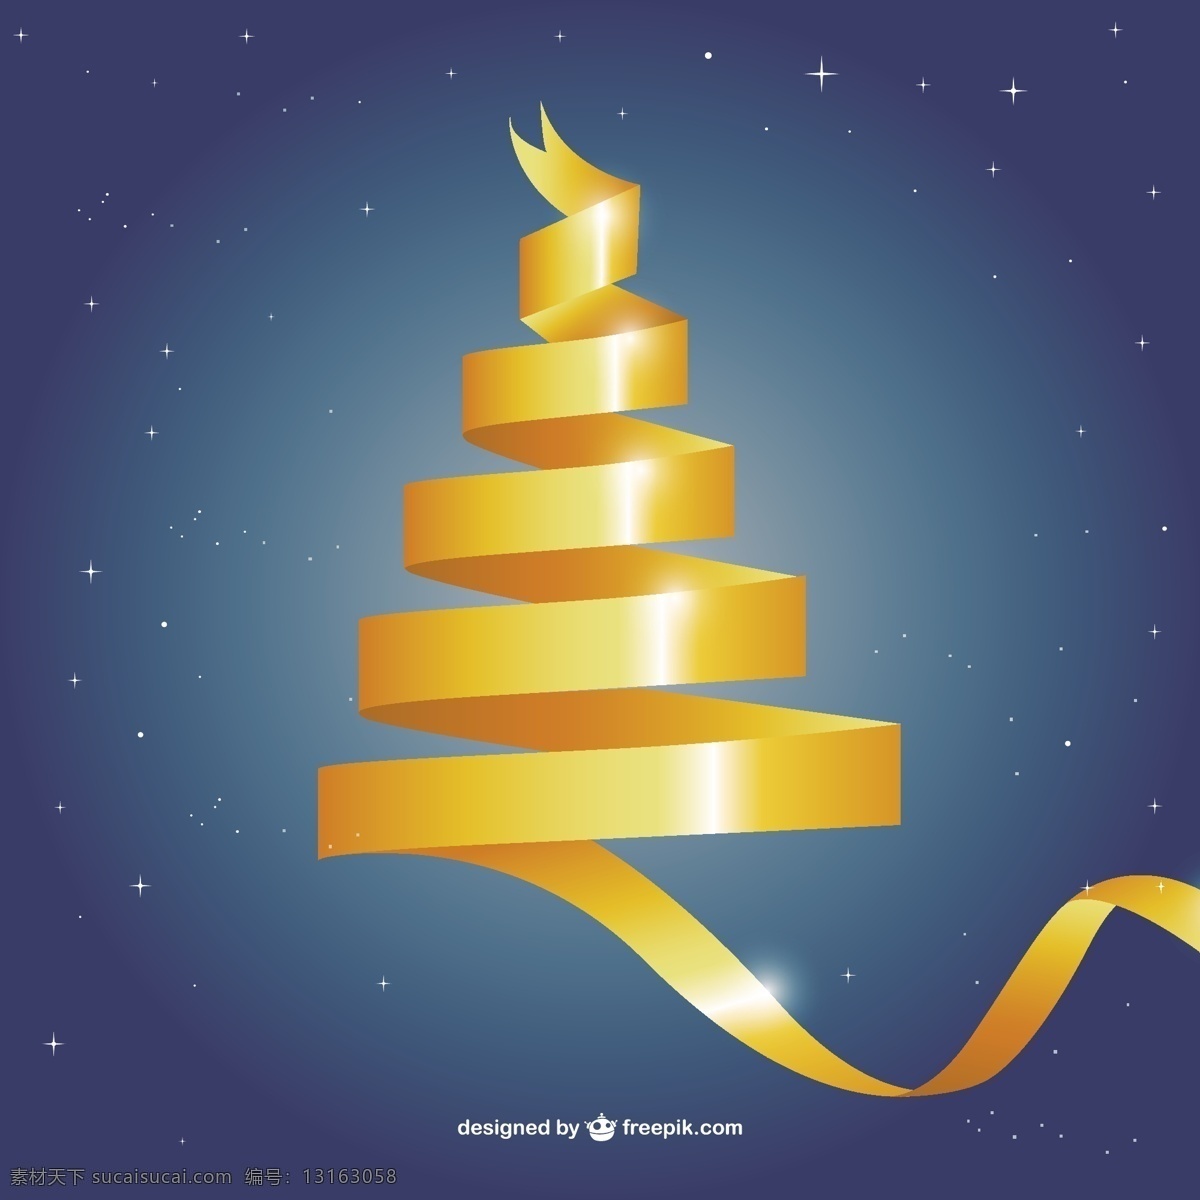 黄色 花边 圣诞树 背景 圣诞花边 树木 装饰 黄色的 黄色的背景 圣诞装饰 装饰品 圣诞装饰品 圣诞背景 蓝色